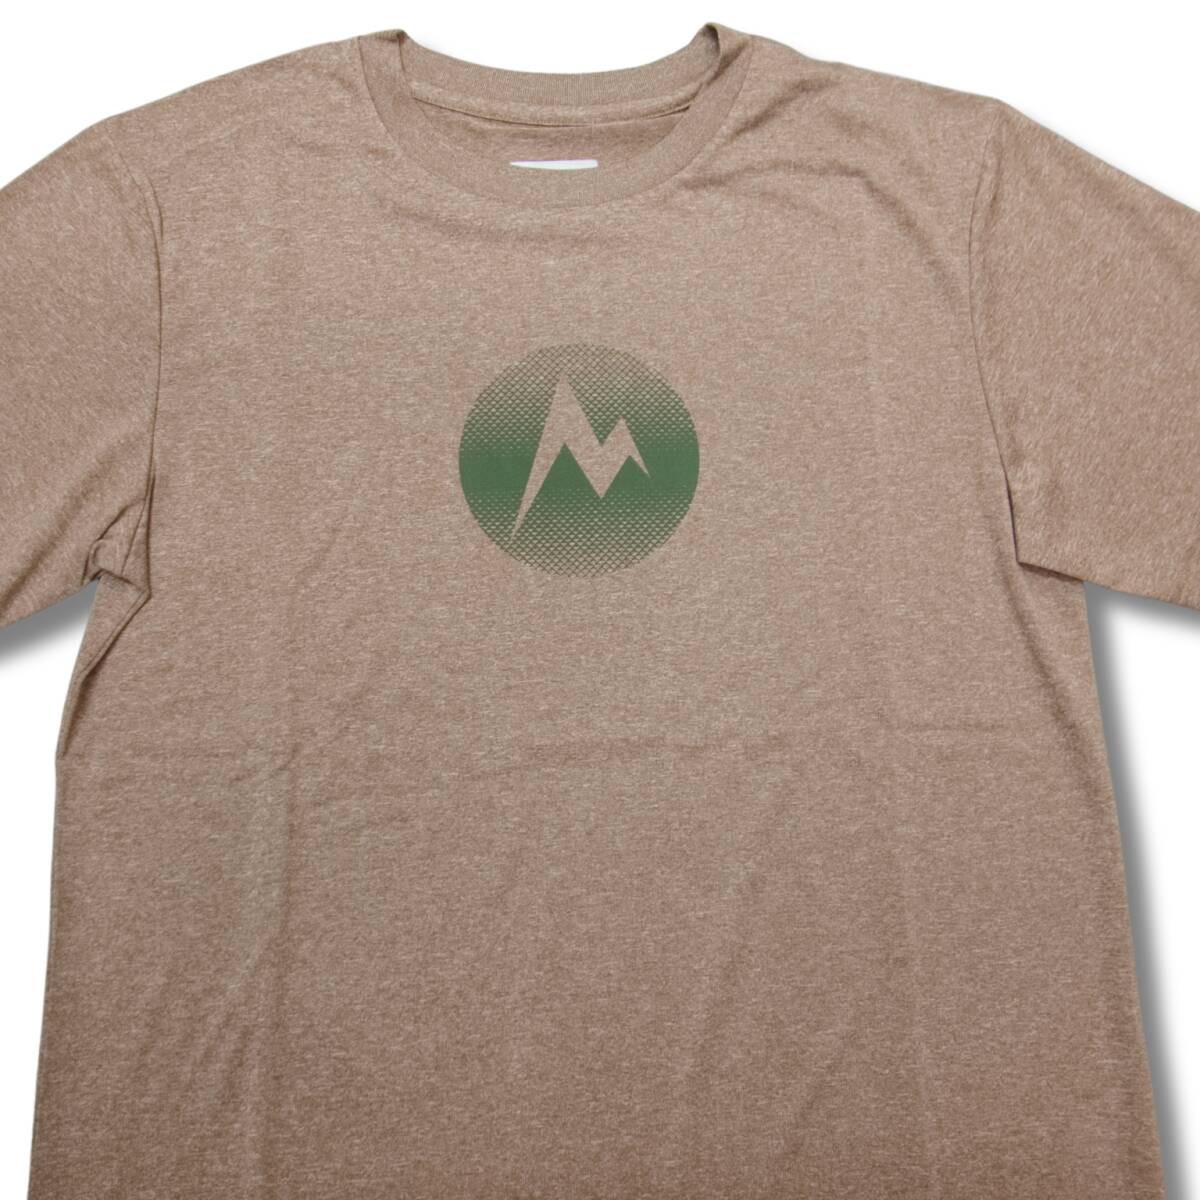 即決☆マーモット MARK ロゴ 半袖Tシャツ CY/Mサイズ 送料無料 速乾吸汗 UPF30 キャンプ ブラウン系カーキ Marmot